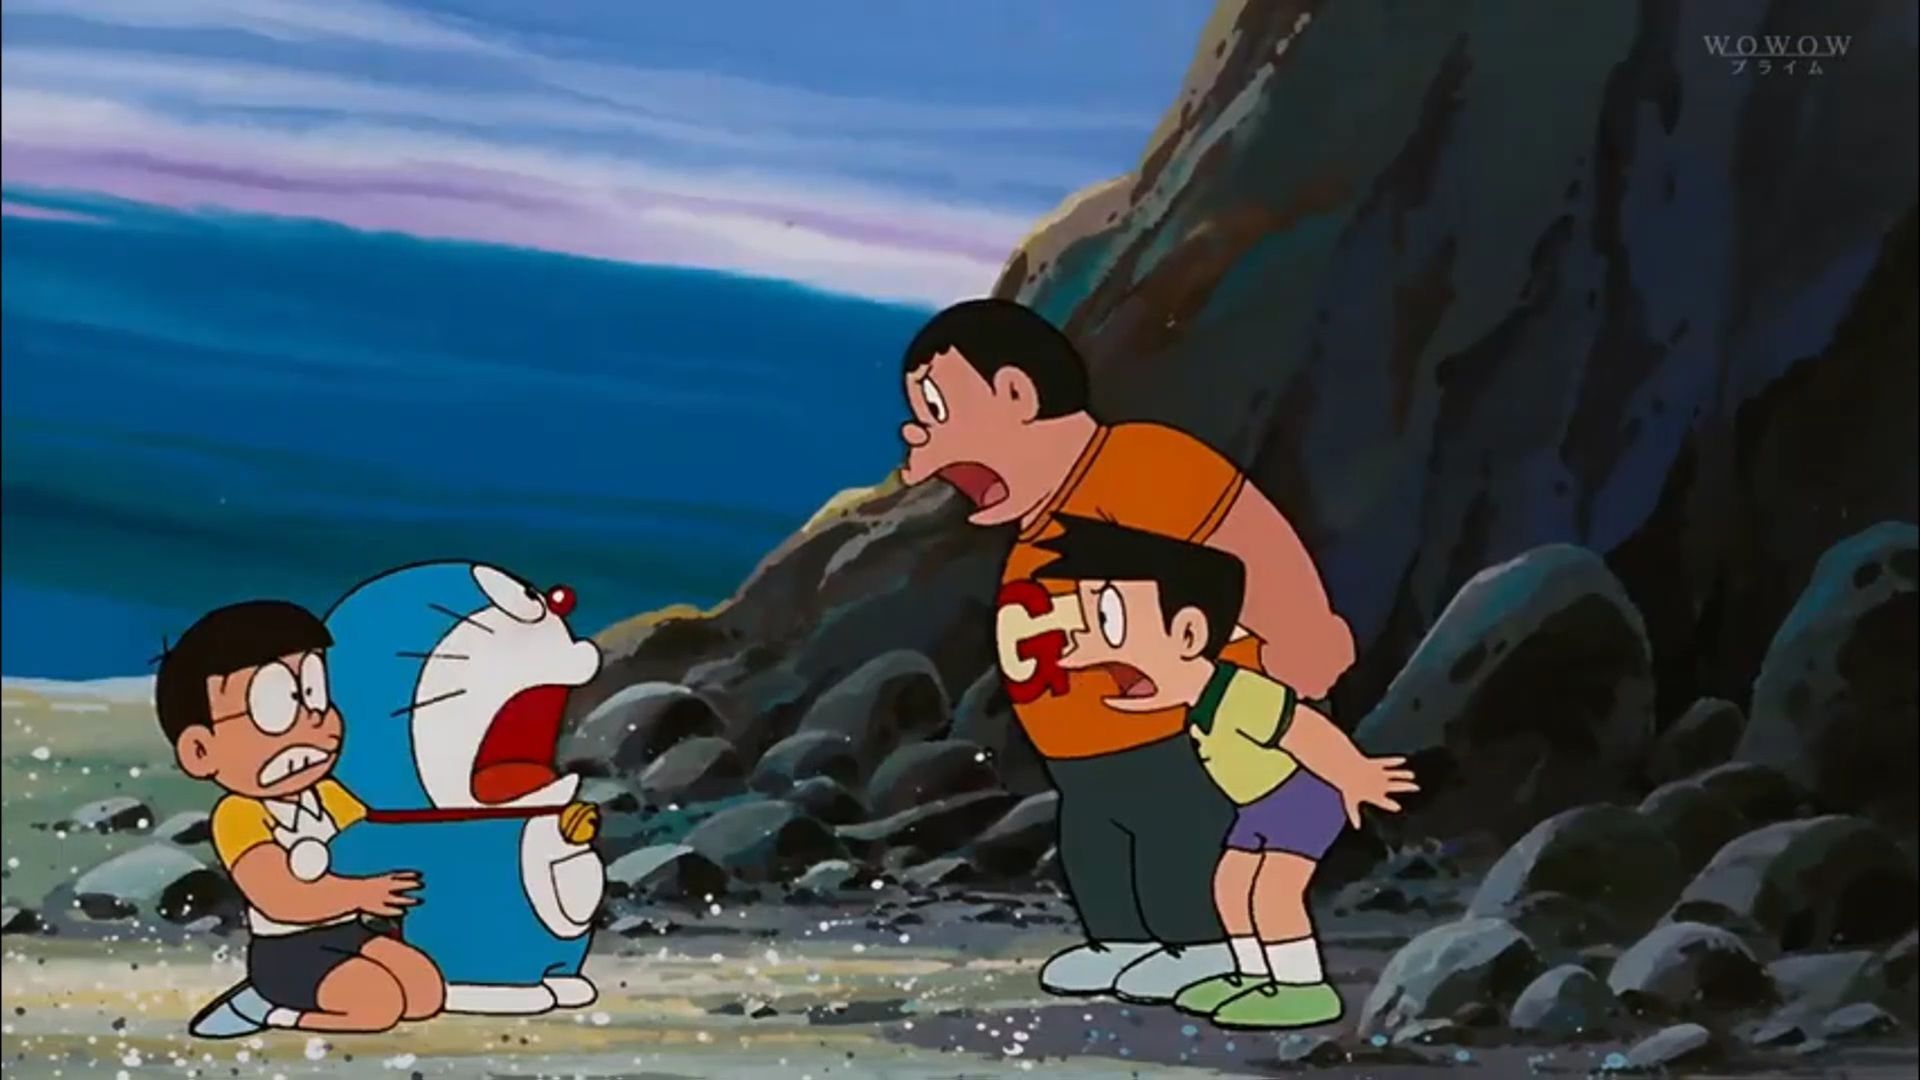 Doraemon truyện dài: Nobita và lâu dài dưới đáy biển - P4 - Bilibili